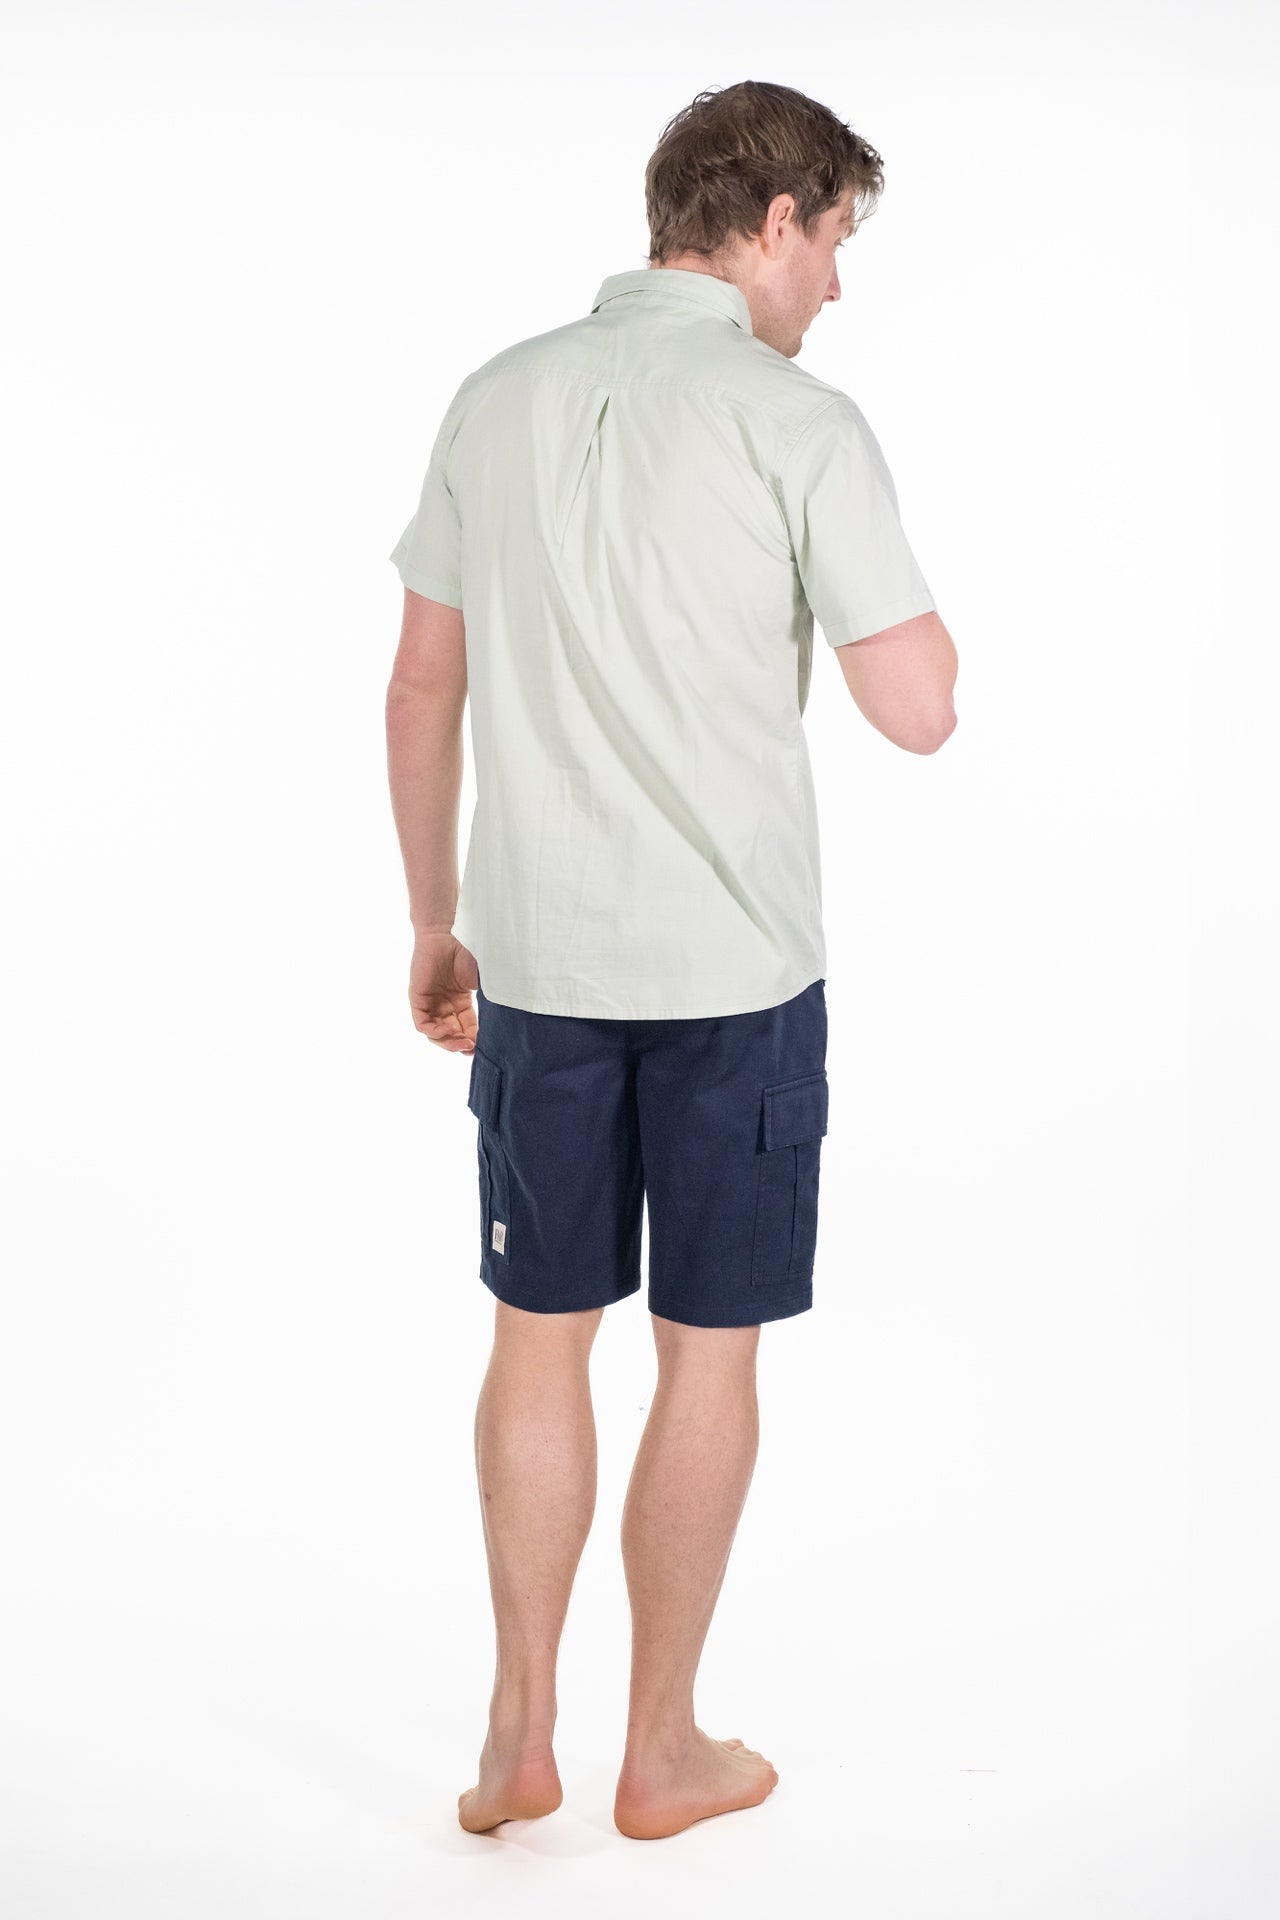 Otis Green Short Sleeved Shirt - Rupert and Buckley - Shirt